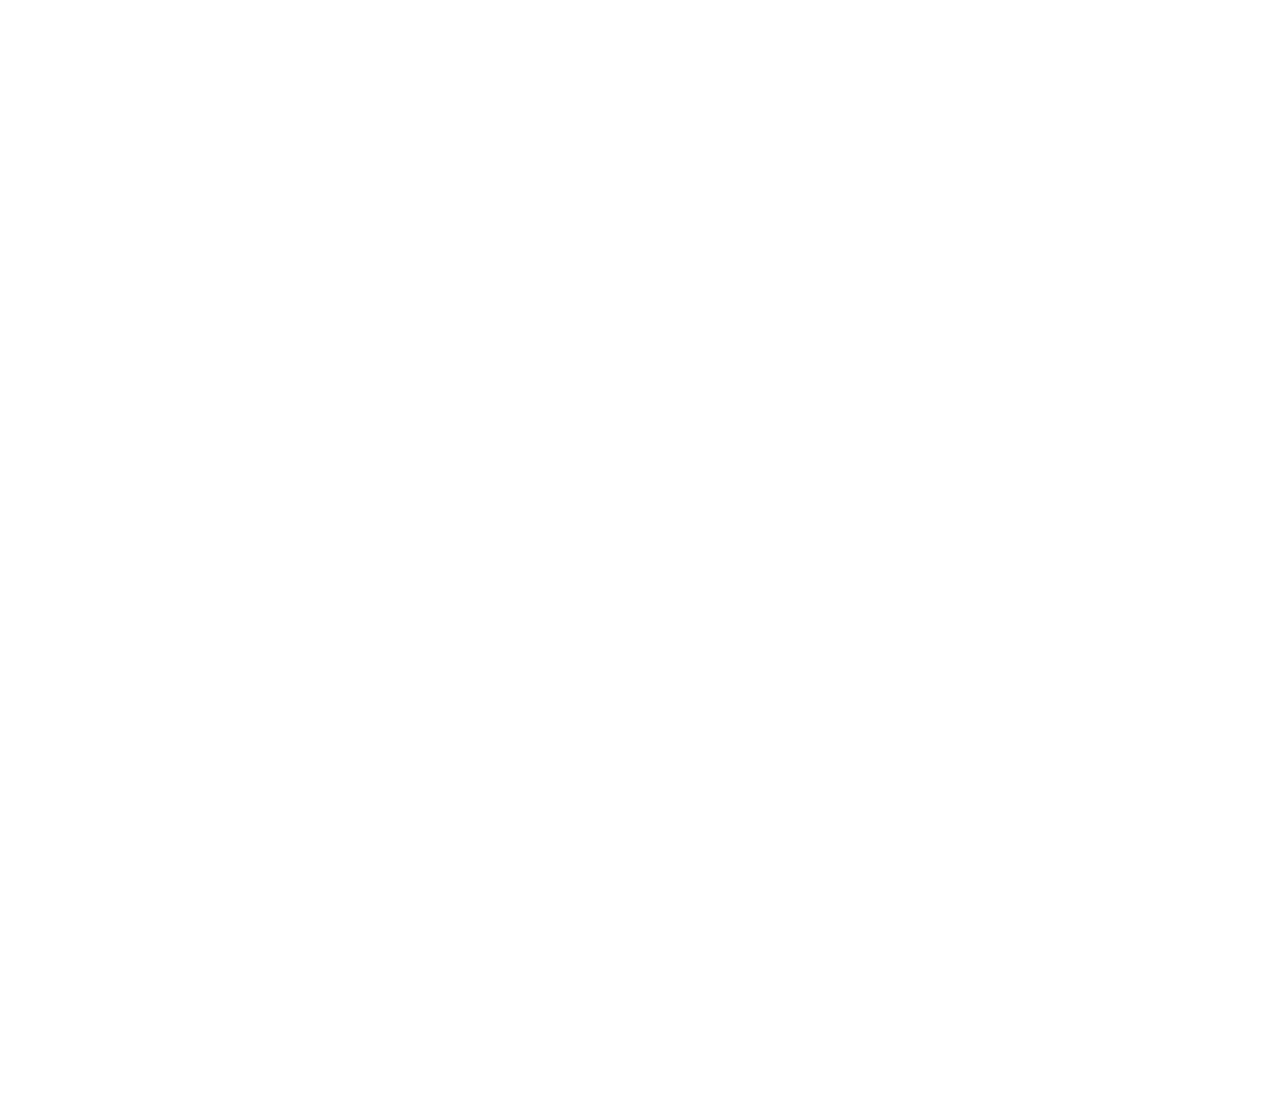 BELLE ÂME ARTISANAT's logo